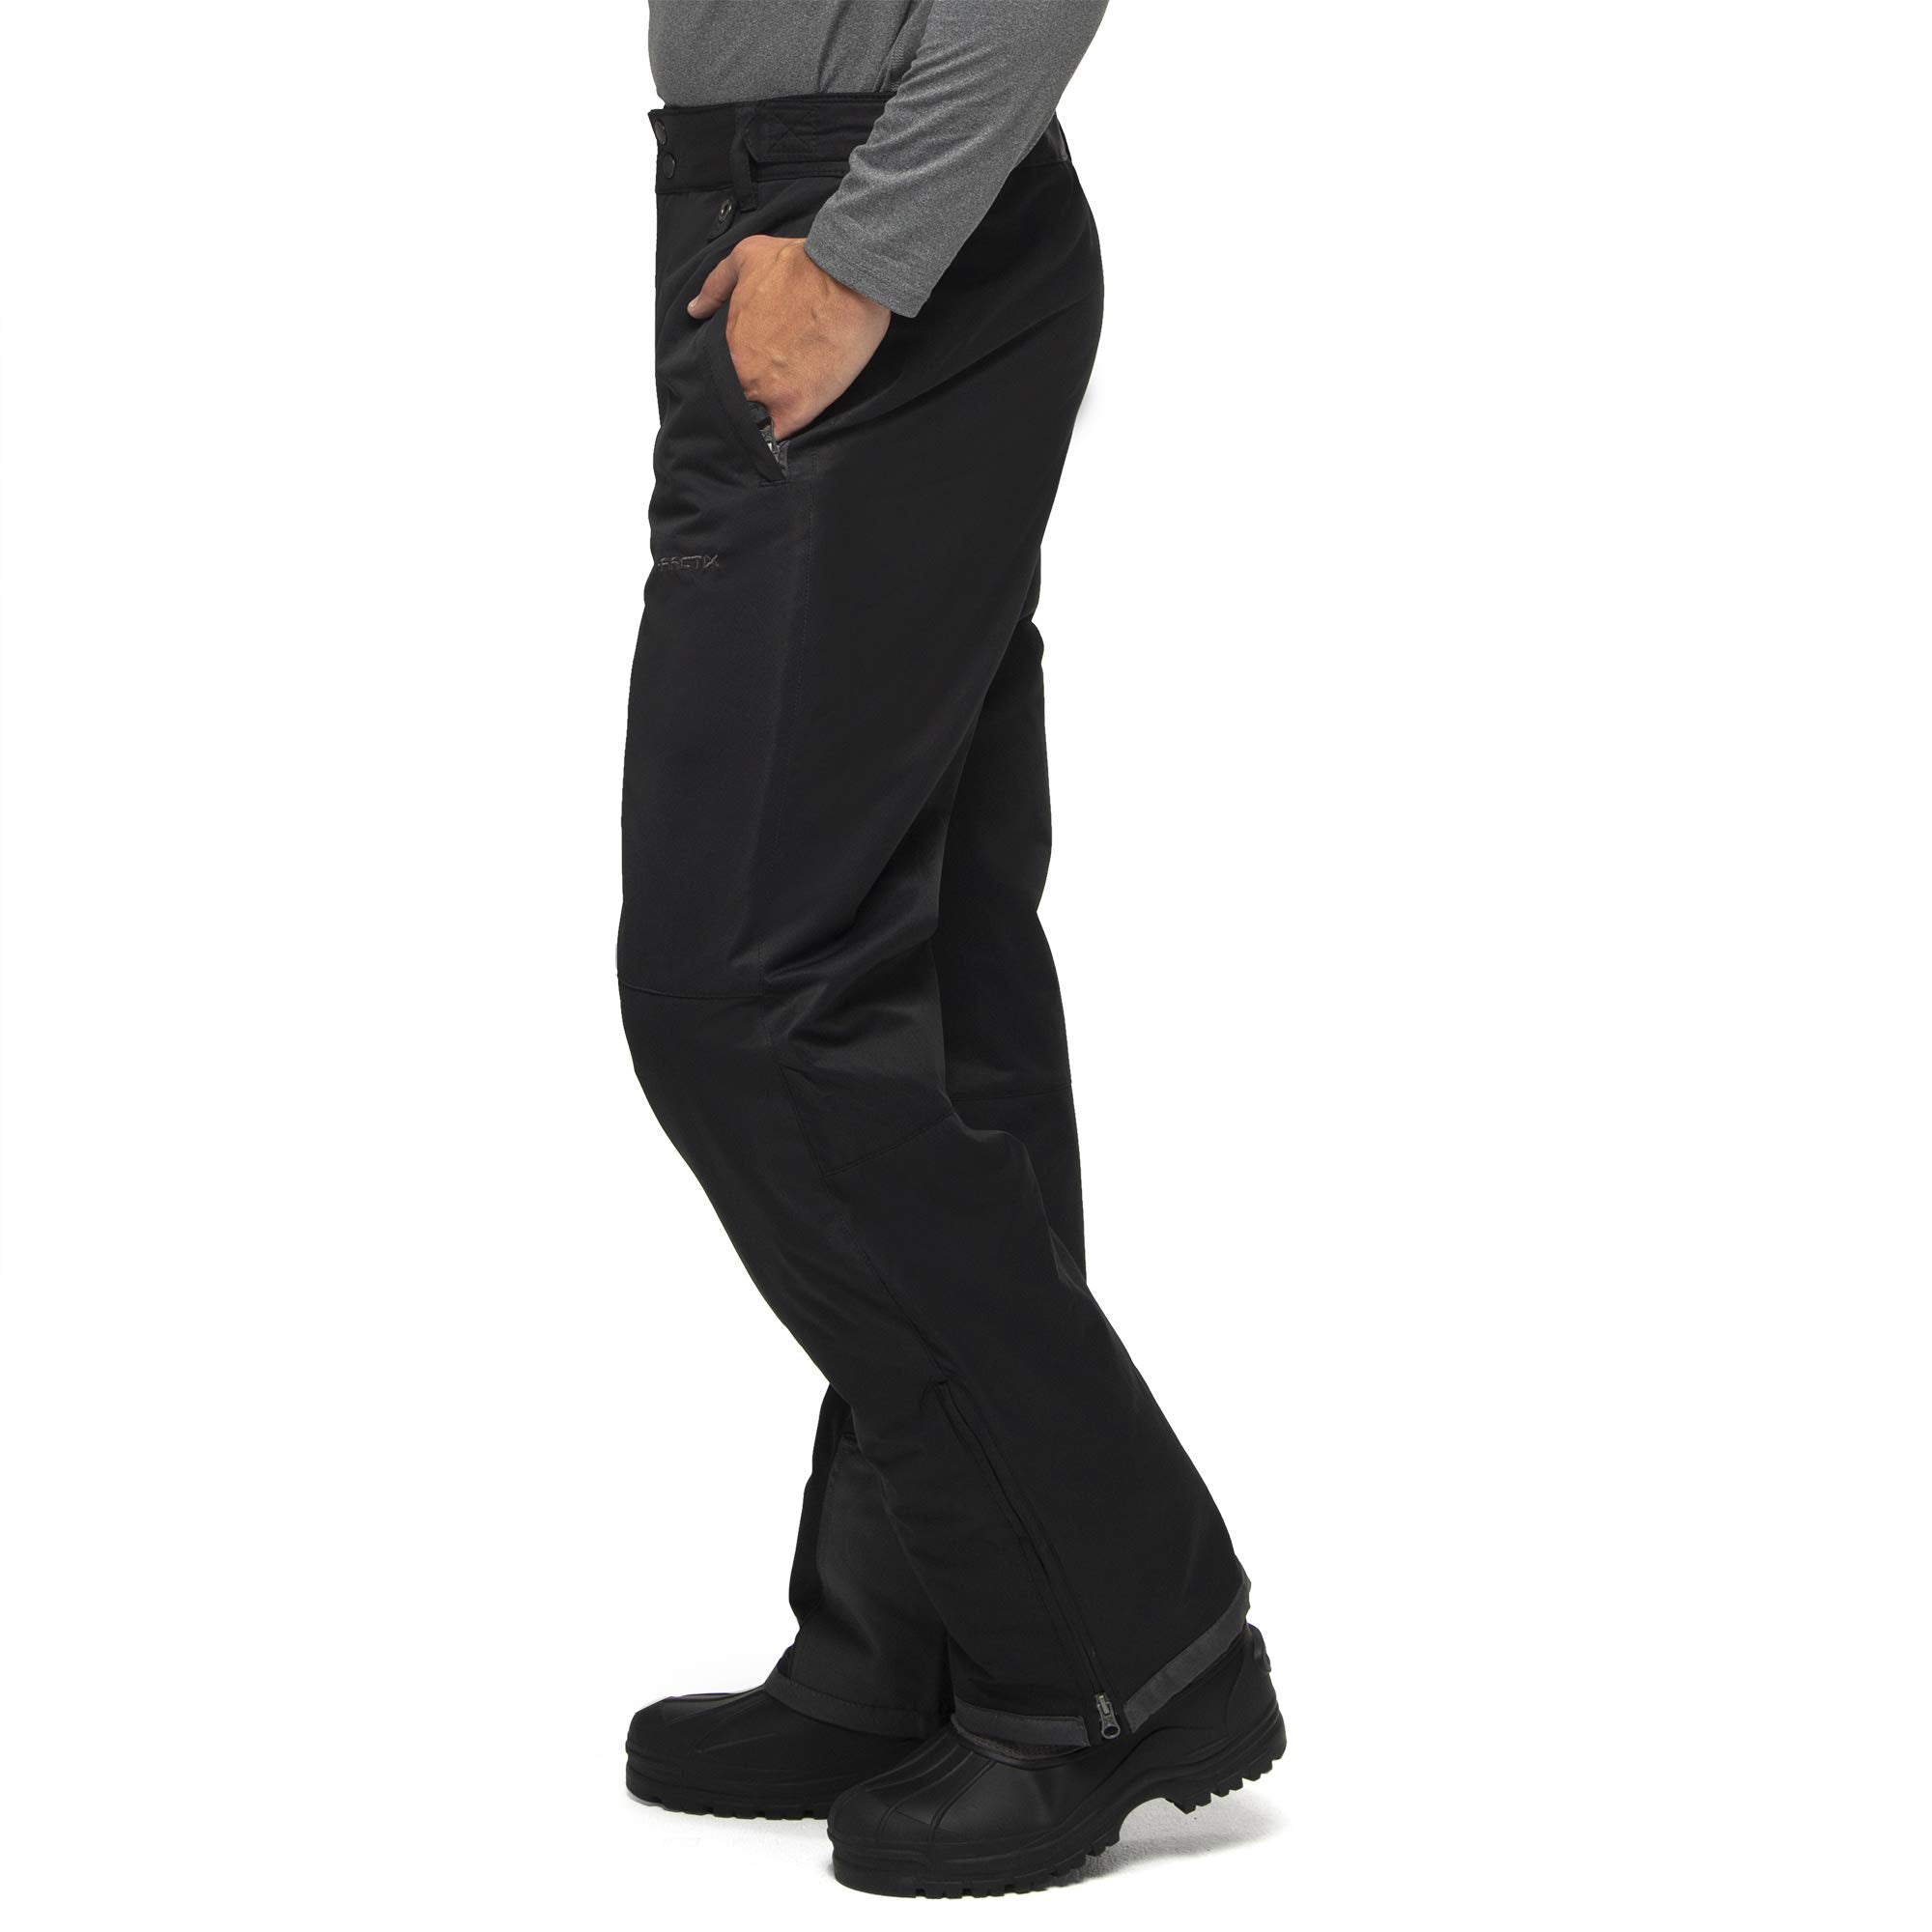 Arctix Men's Essential Snow Pants, Black, Large (36-38W 32L)